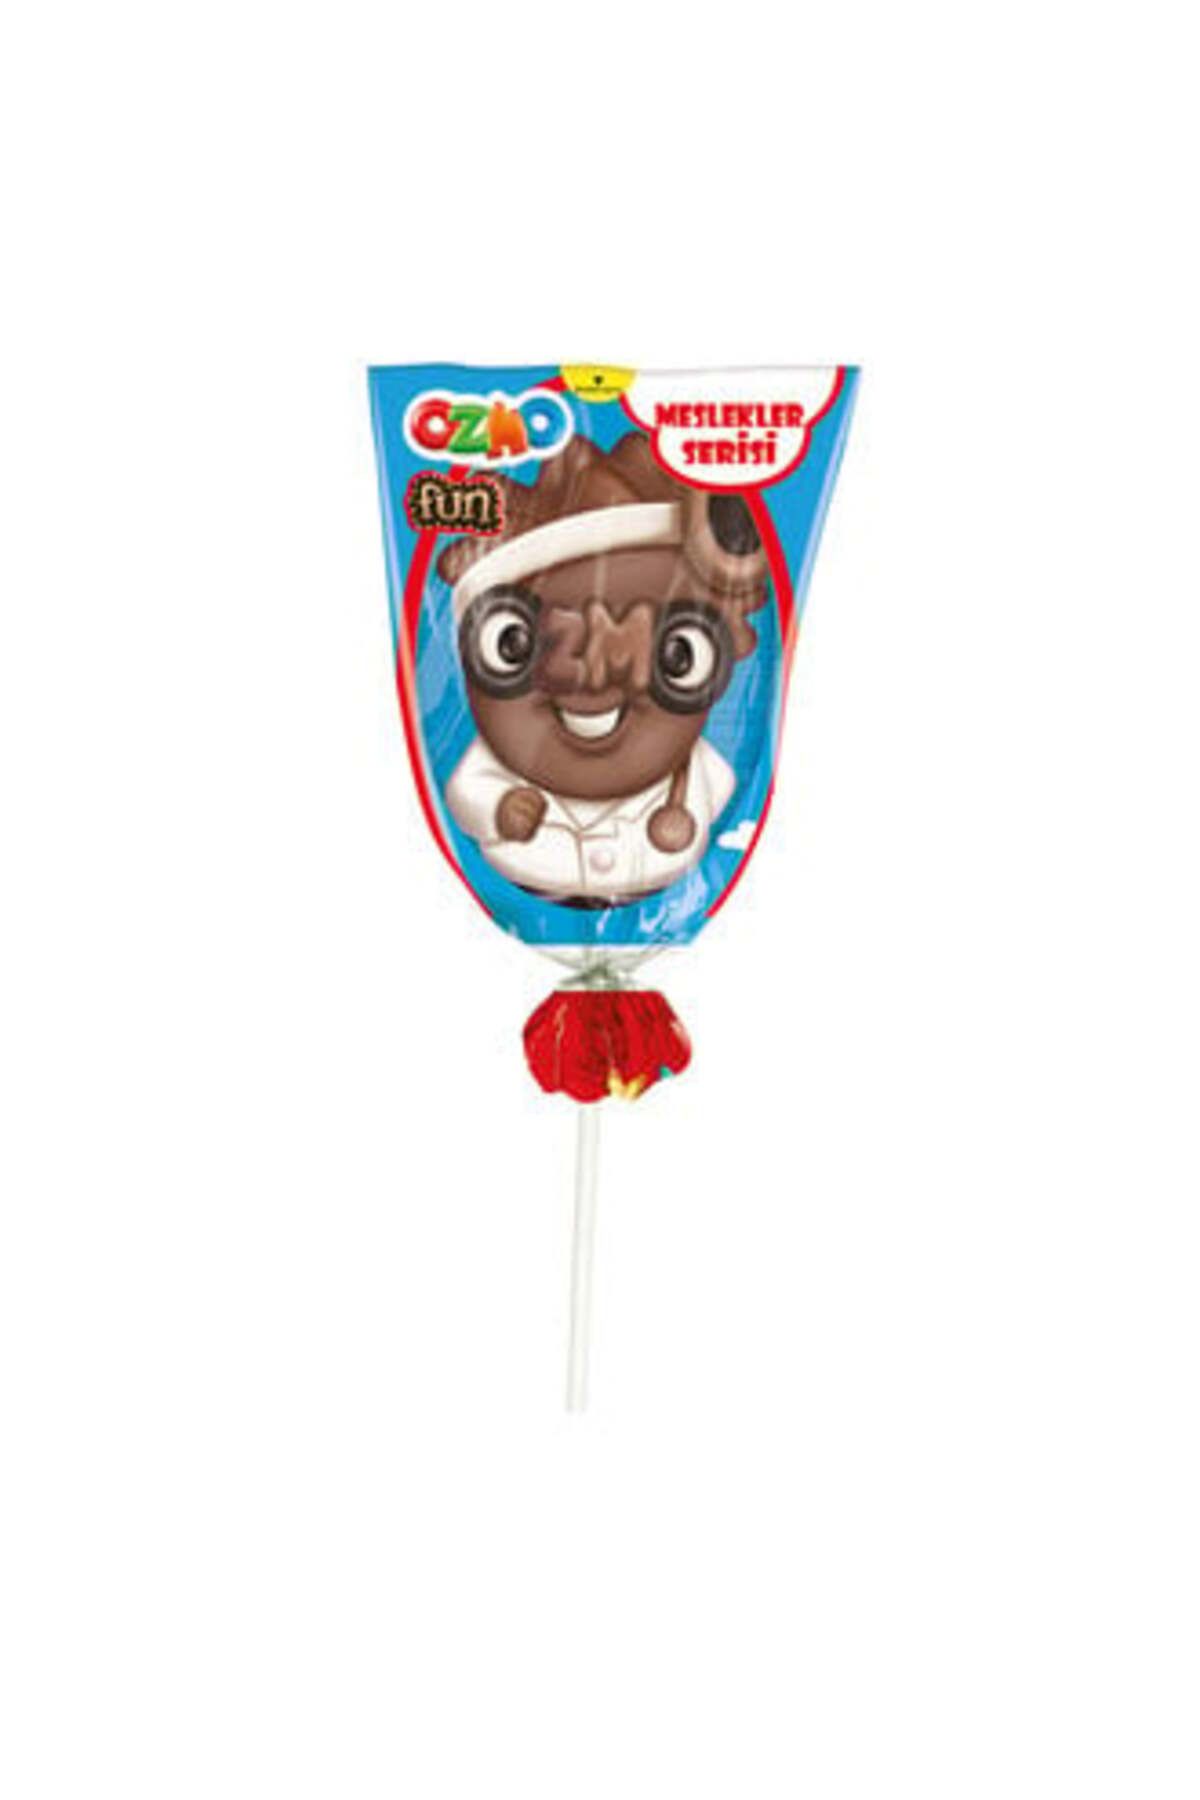 Ozmo Fun Meslekler Serisi Figürlü Çikolatalar 23 G ( 1 ADET )